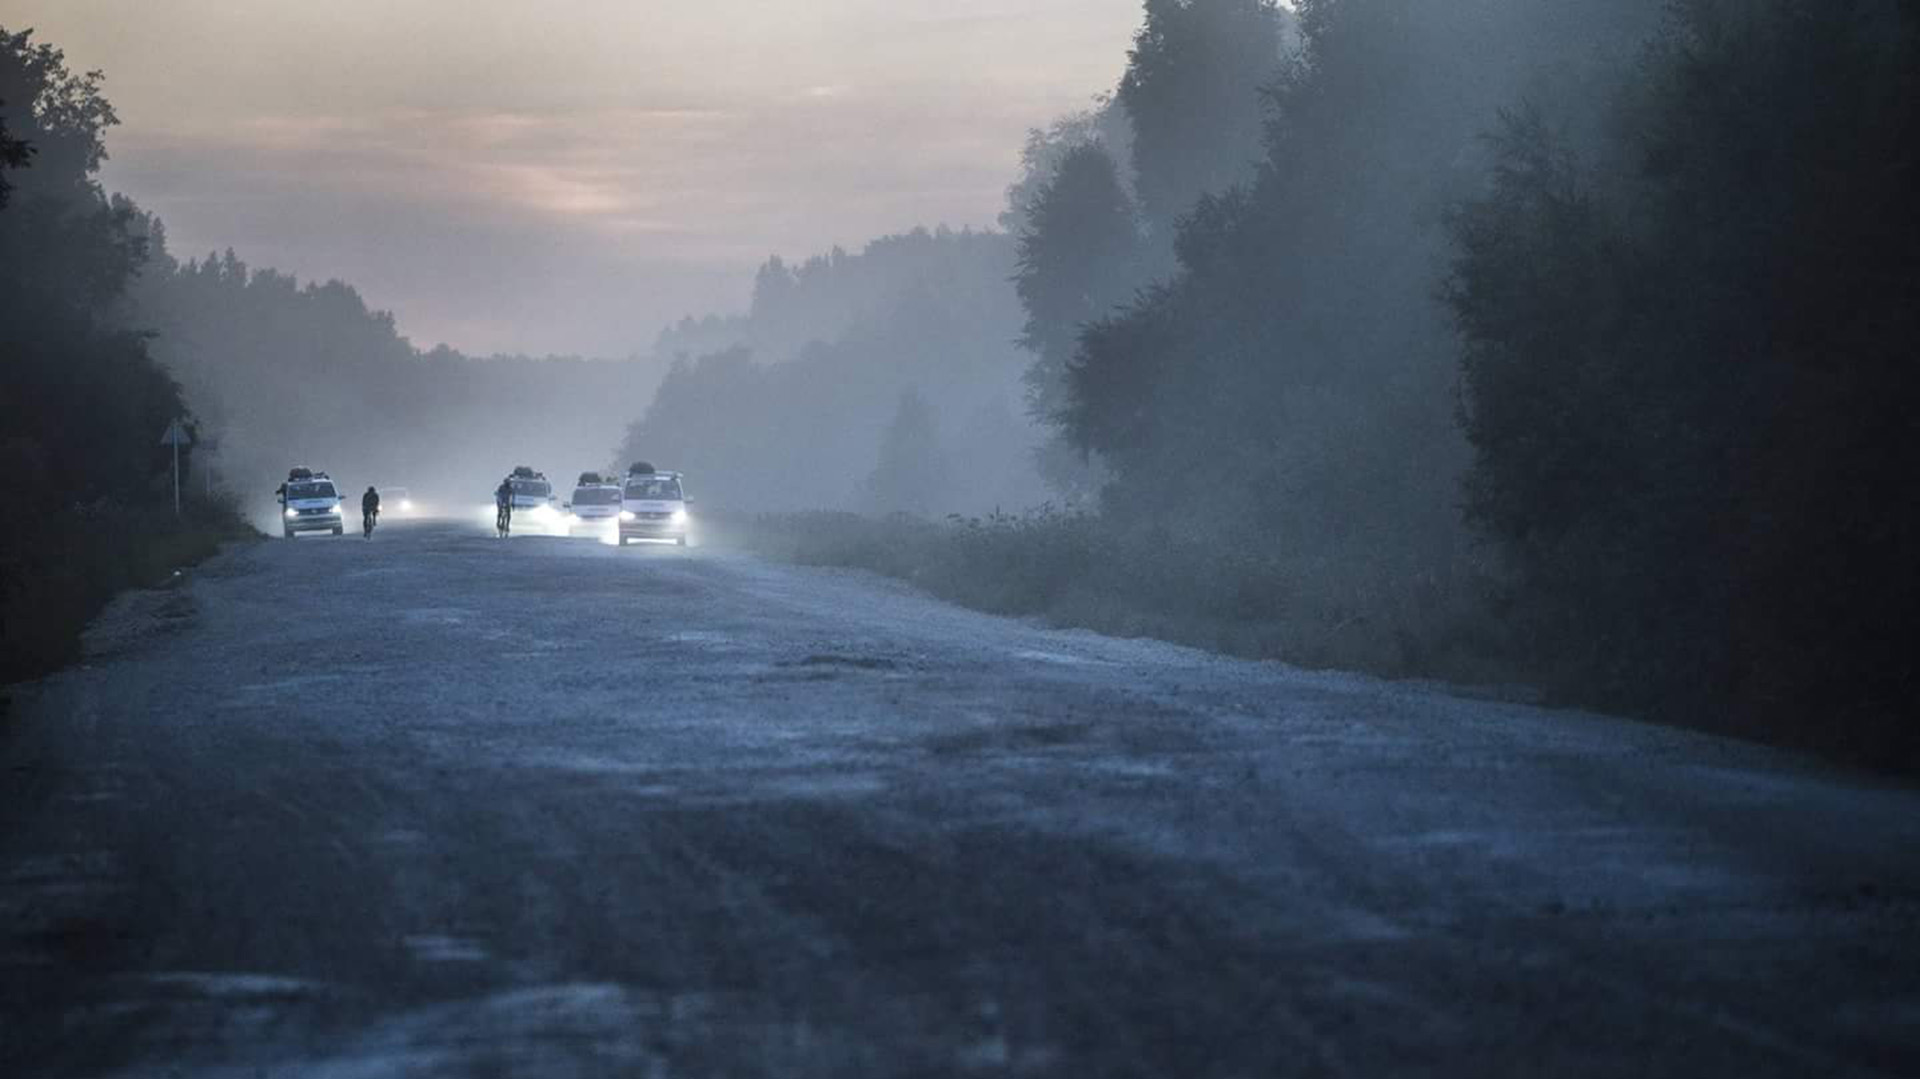 Todas las carreras tienen equipos de acompañamiento. En esta imagen, atraviesa Siberia camino a Vladivostok.